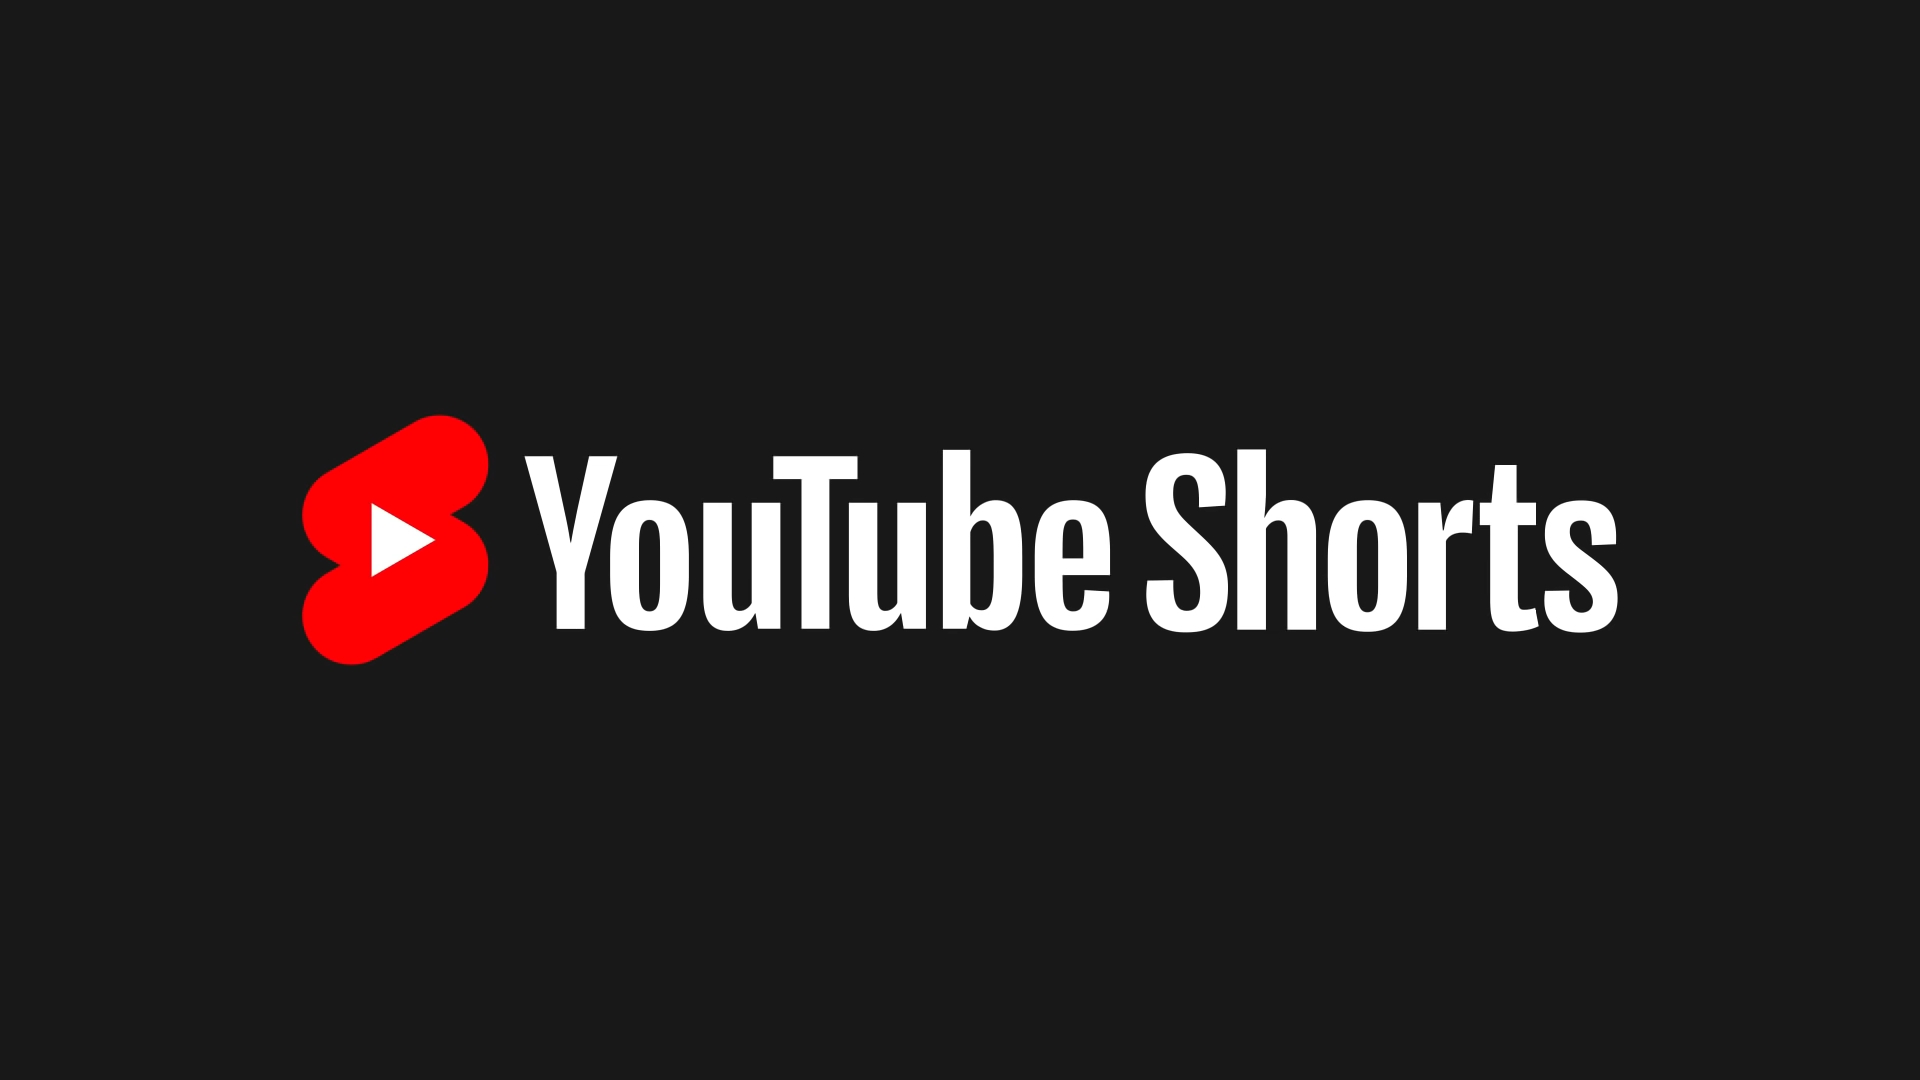 Bộ sưu tập 200 Youtube shorts background video đỉnh nhất trong năm